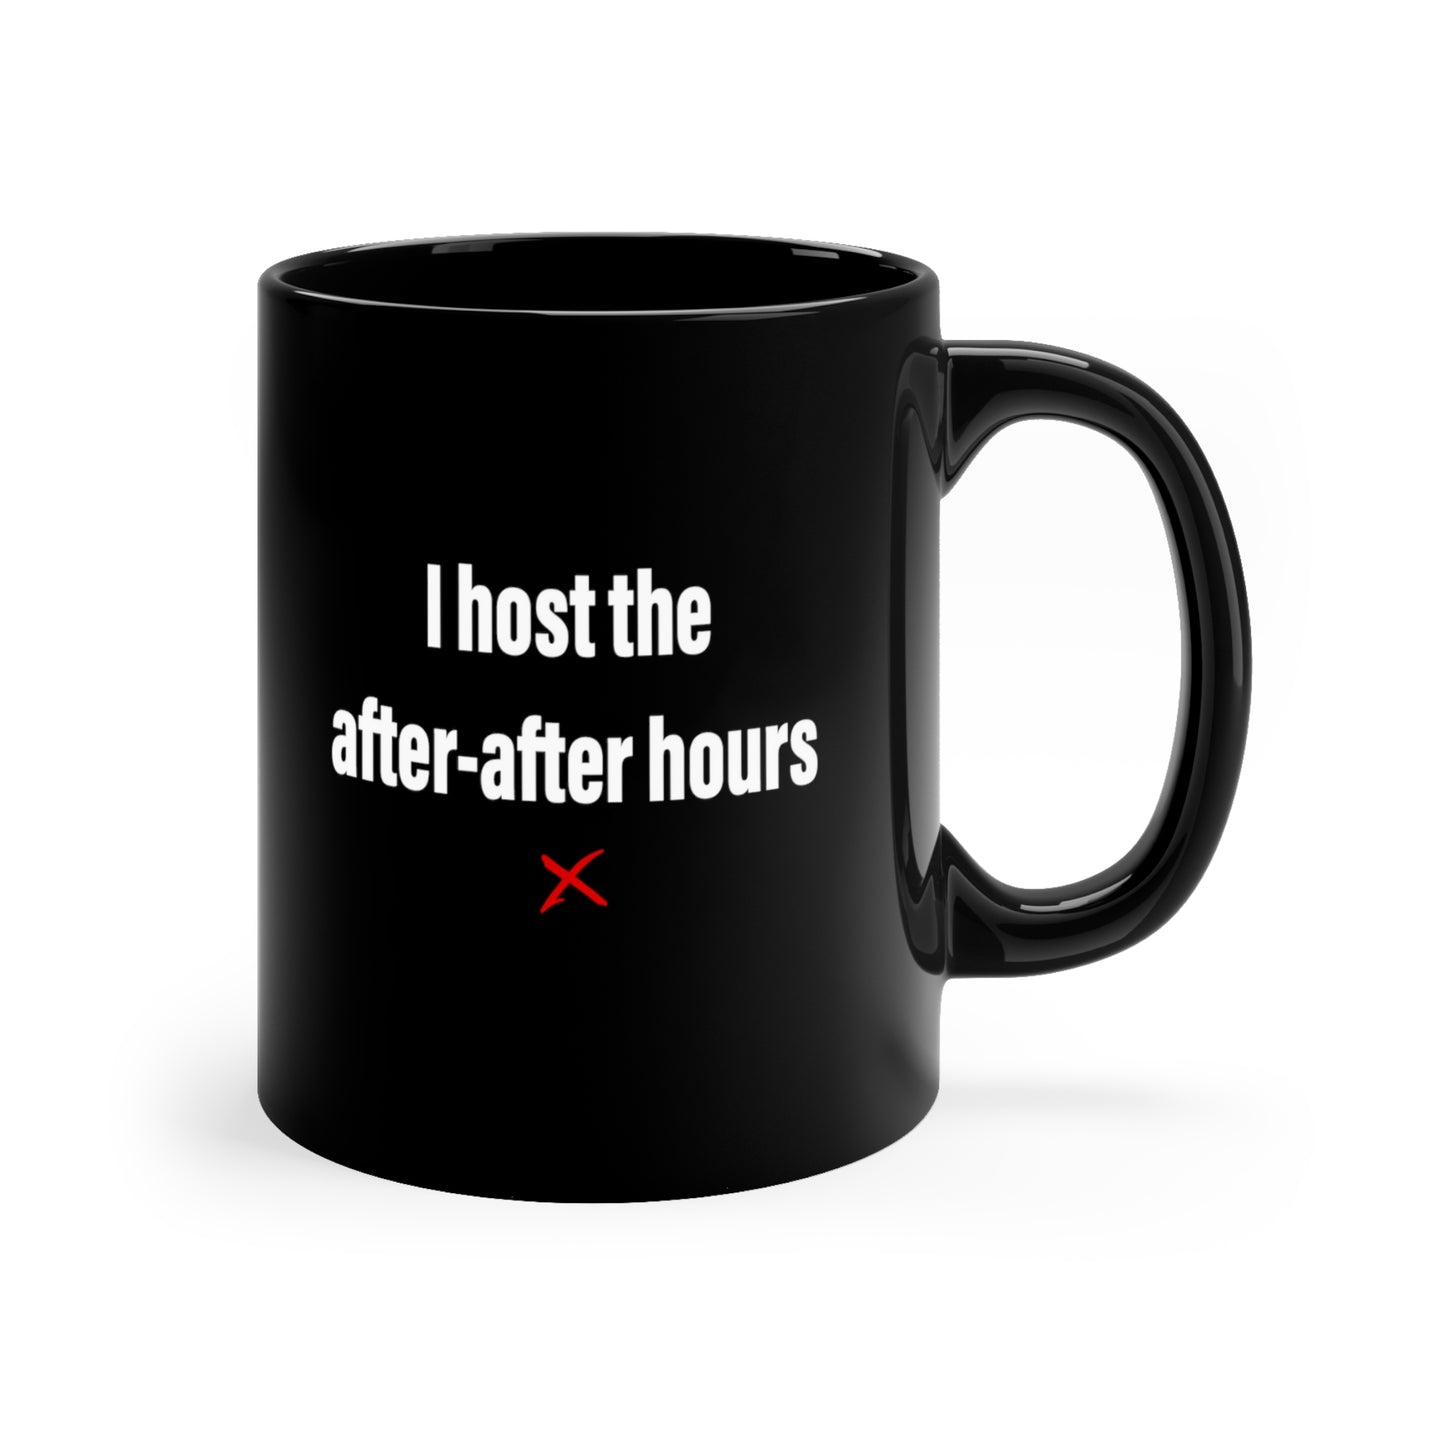 I host the after-after hours - Mug